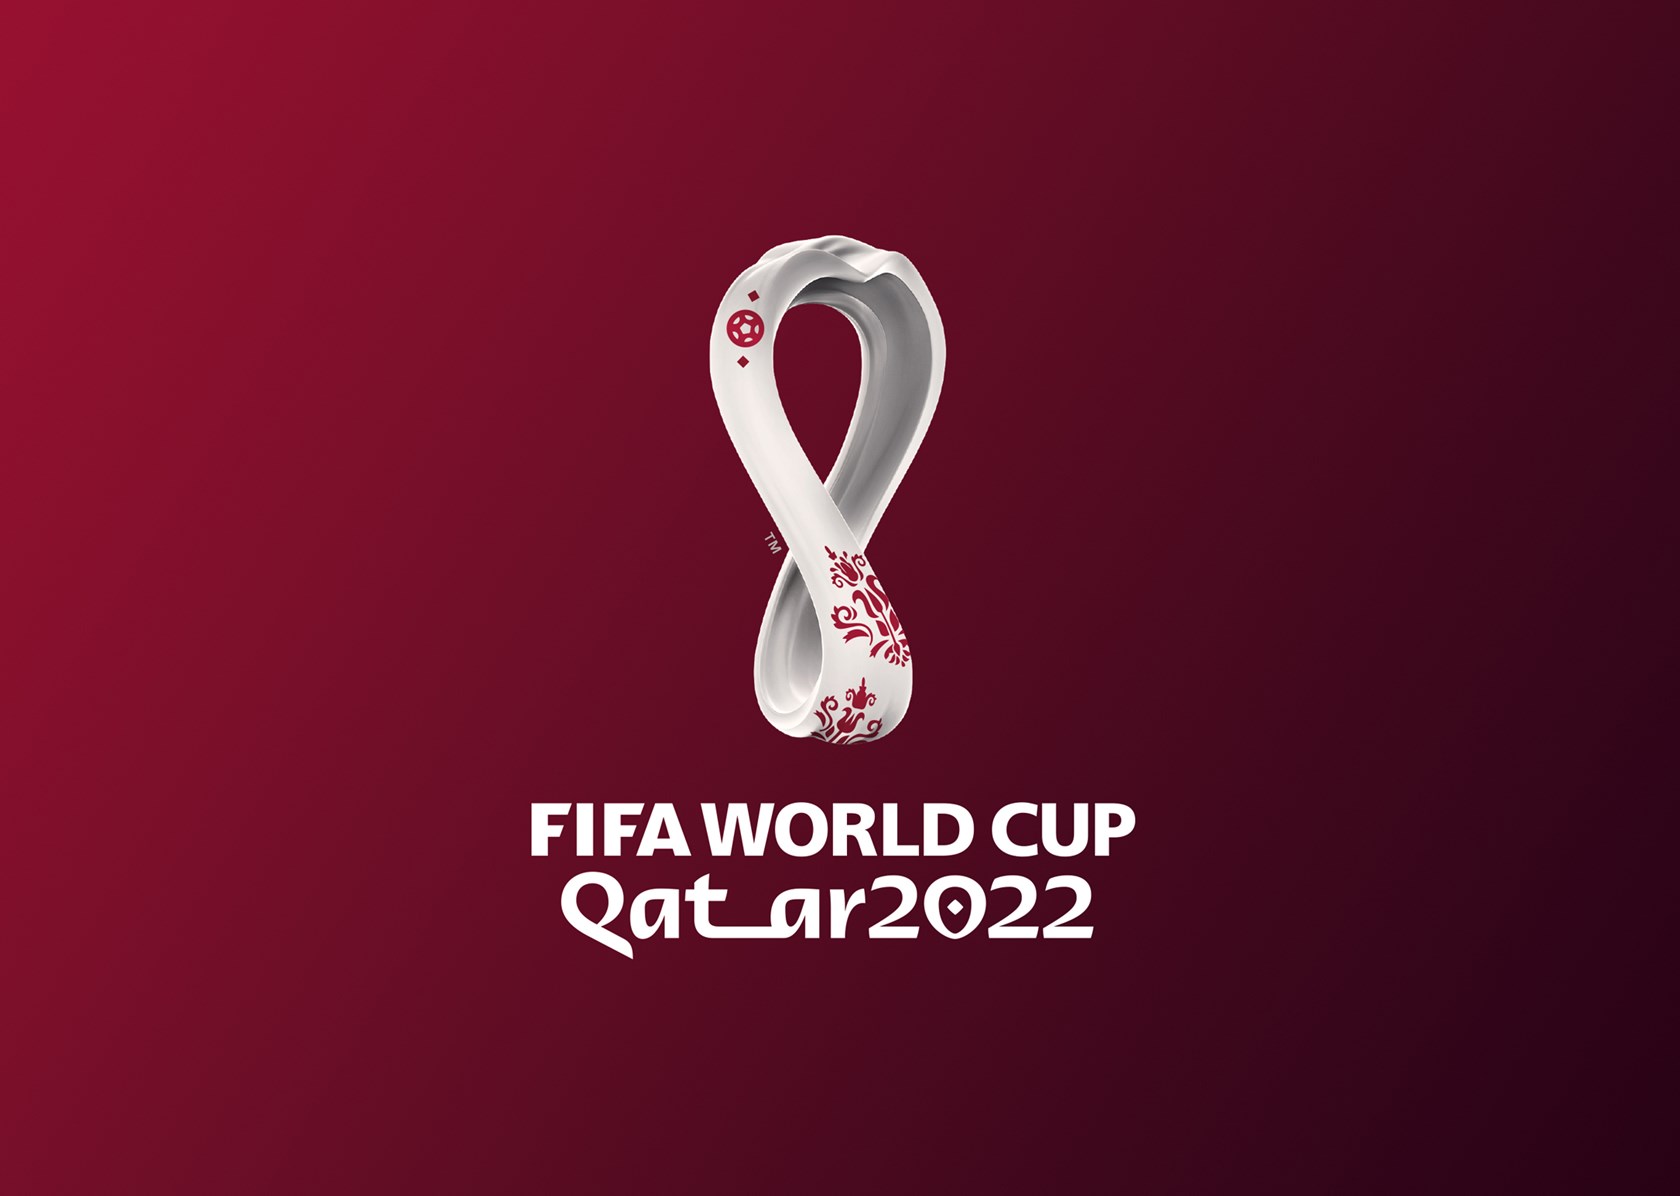 Coupe du Monde de la FIFA, Qatar 2022™ —
Une boucle de culture et de football